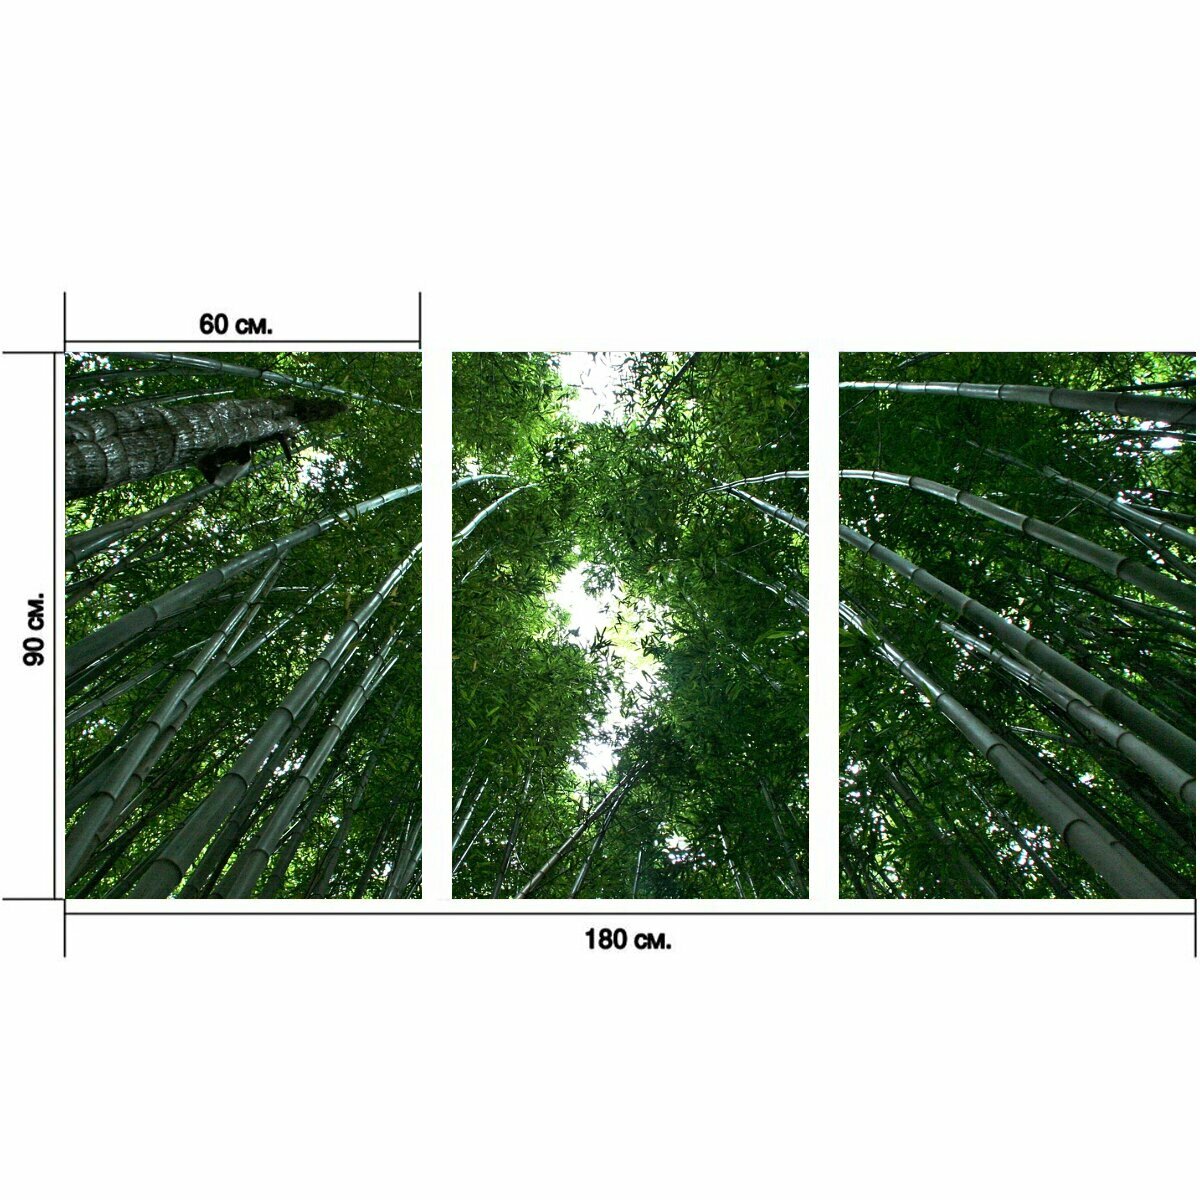 Модульный постер "Бамбук, бамбуковый лес, бамбуковые растения" 180 x 90 см. для интерьера